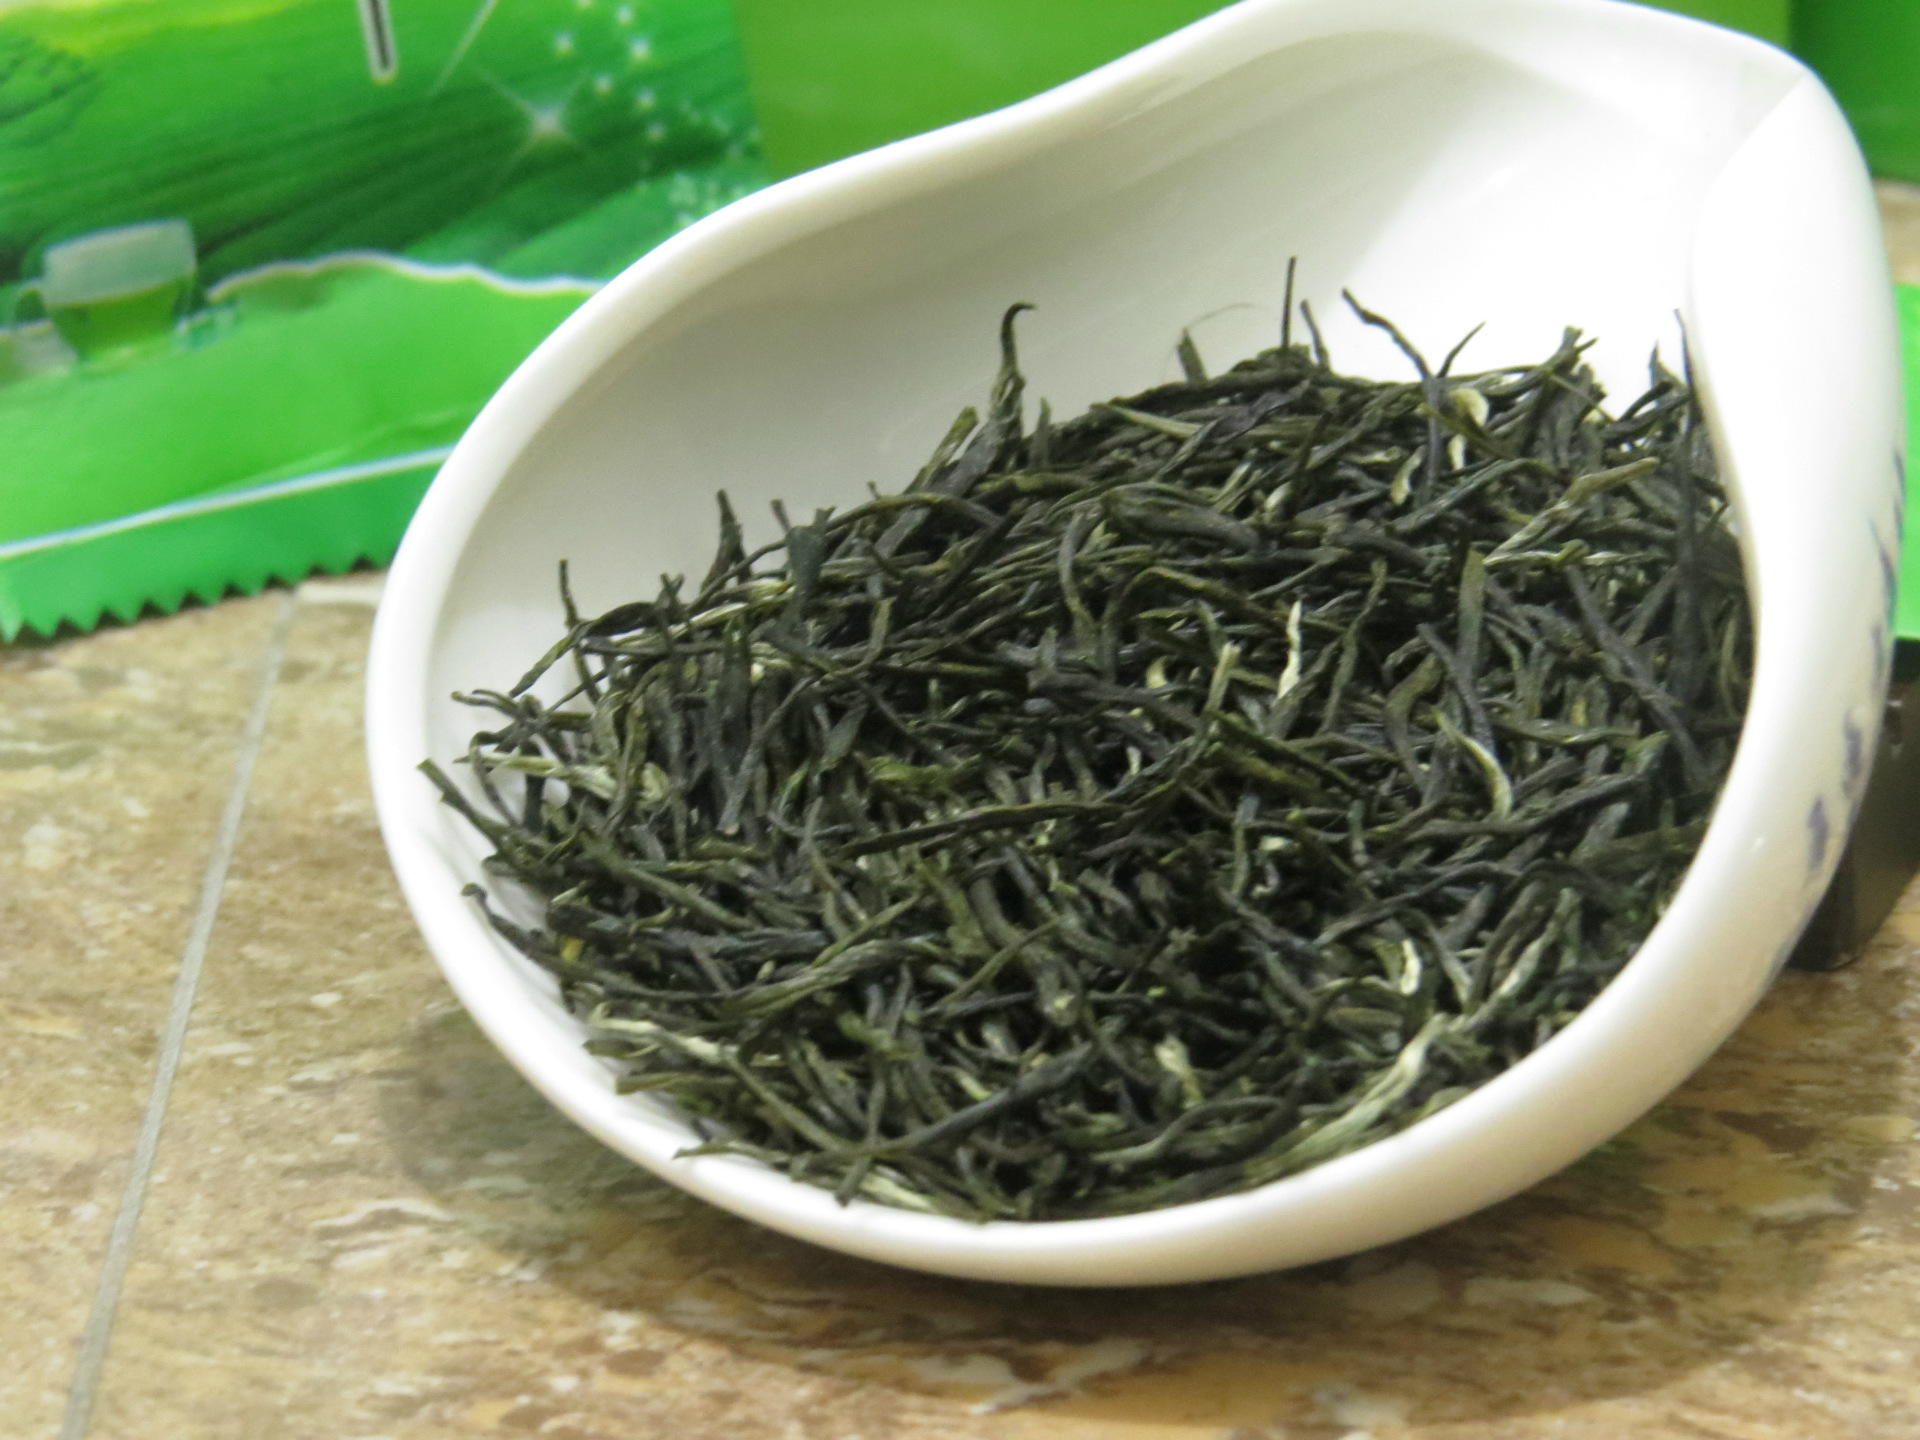 绿茶绿毛峰特价批发 毛尖250g礼品装 厂家直销优质茶叶清香可口